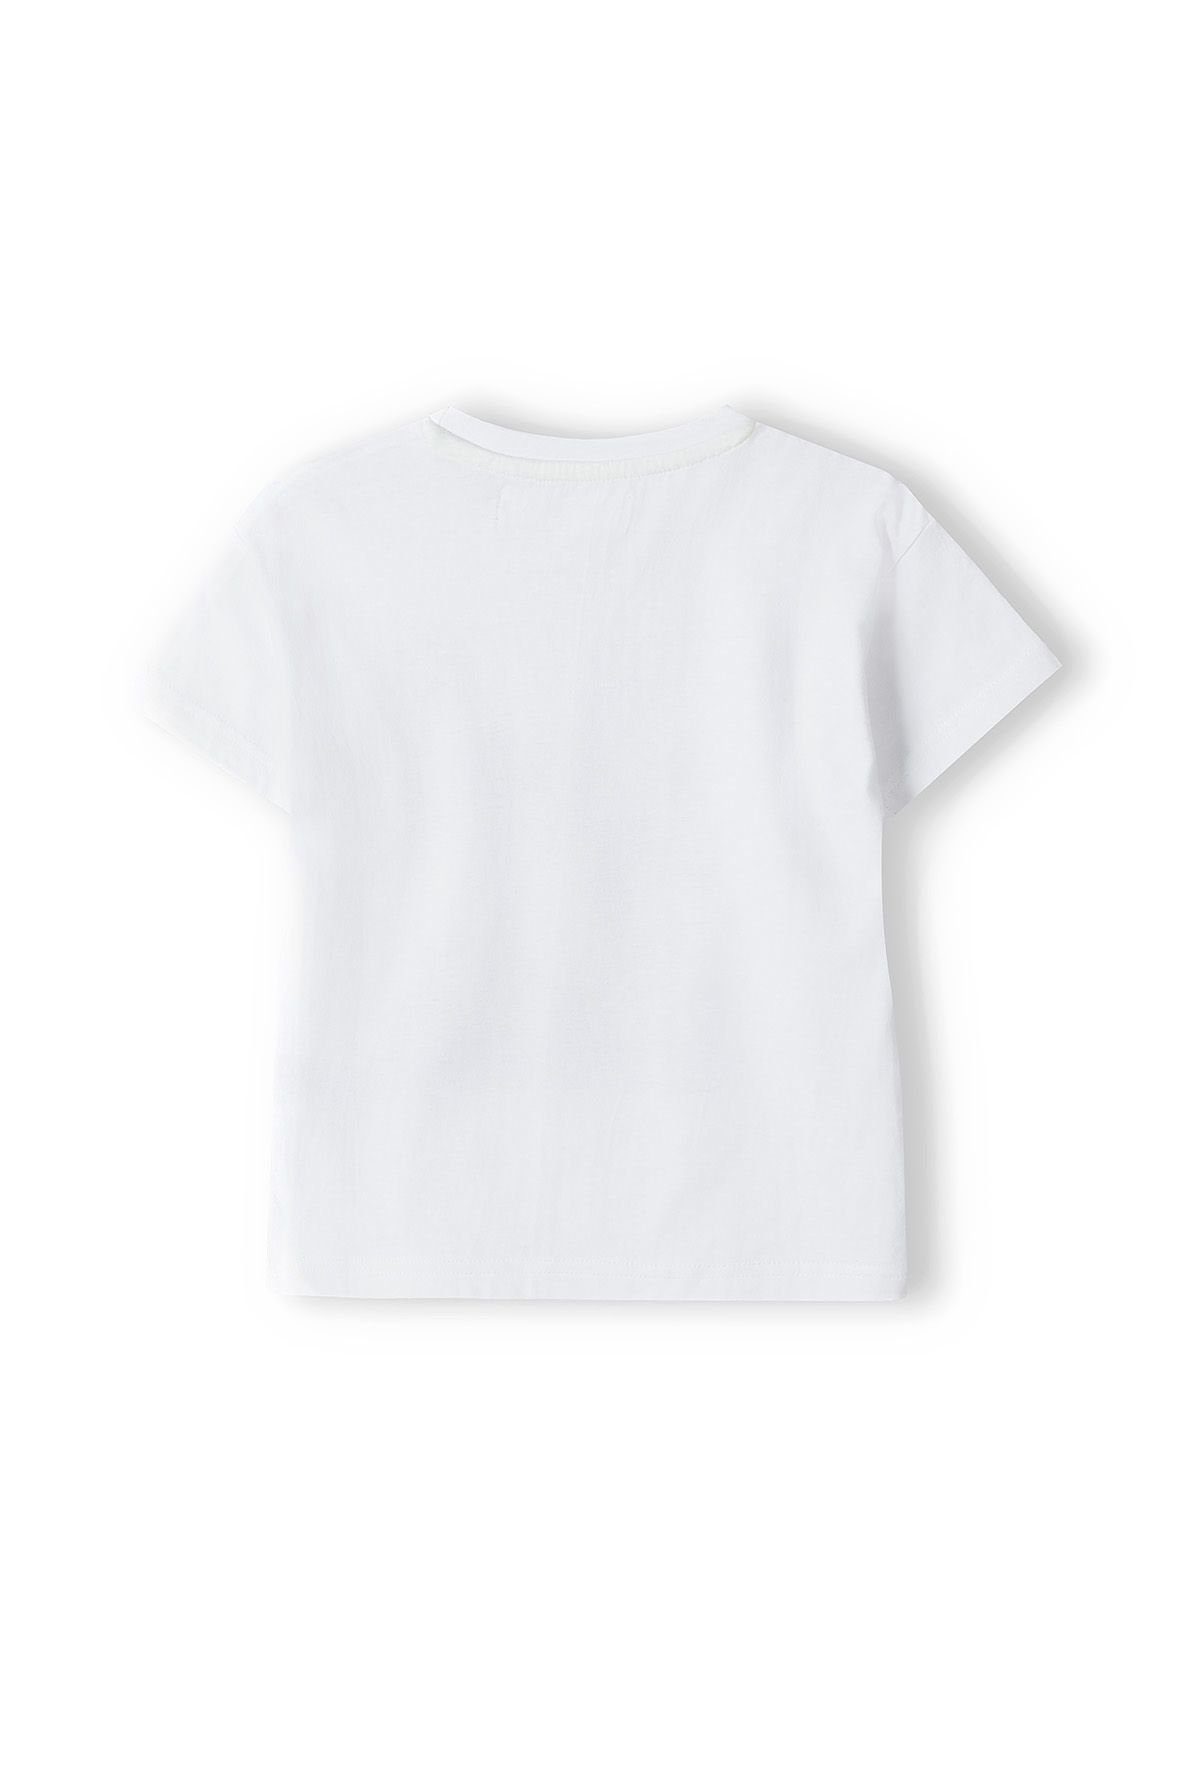 T-Shirt Weiß MINOTI (3y-14y) T-Shirt